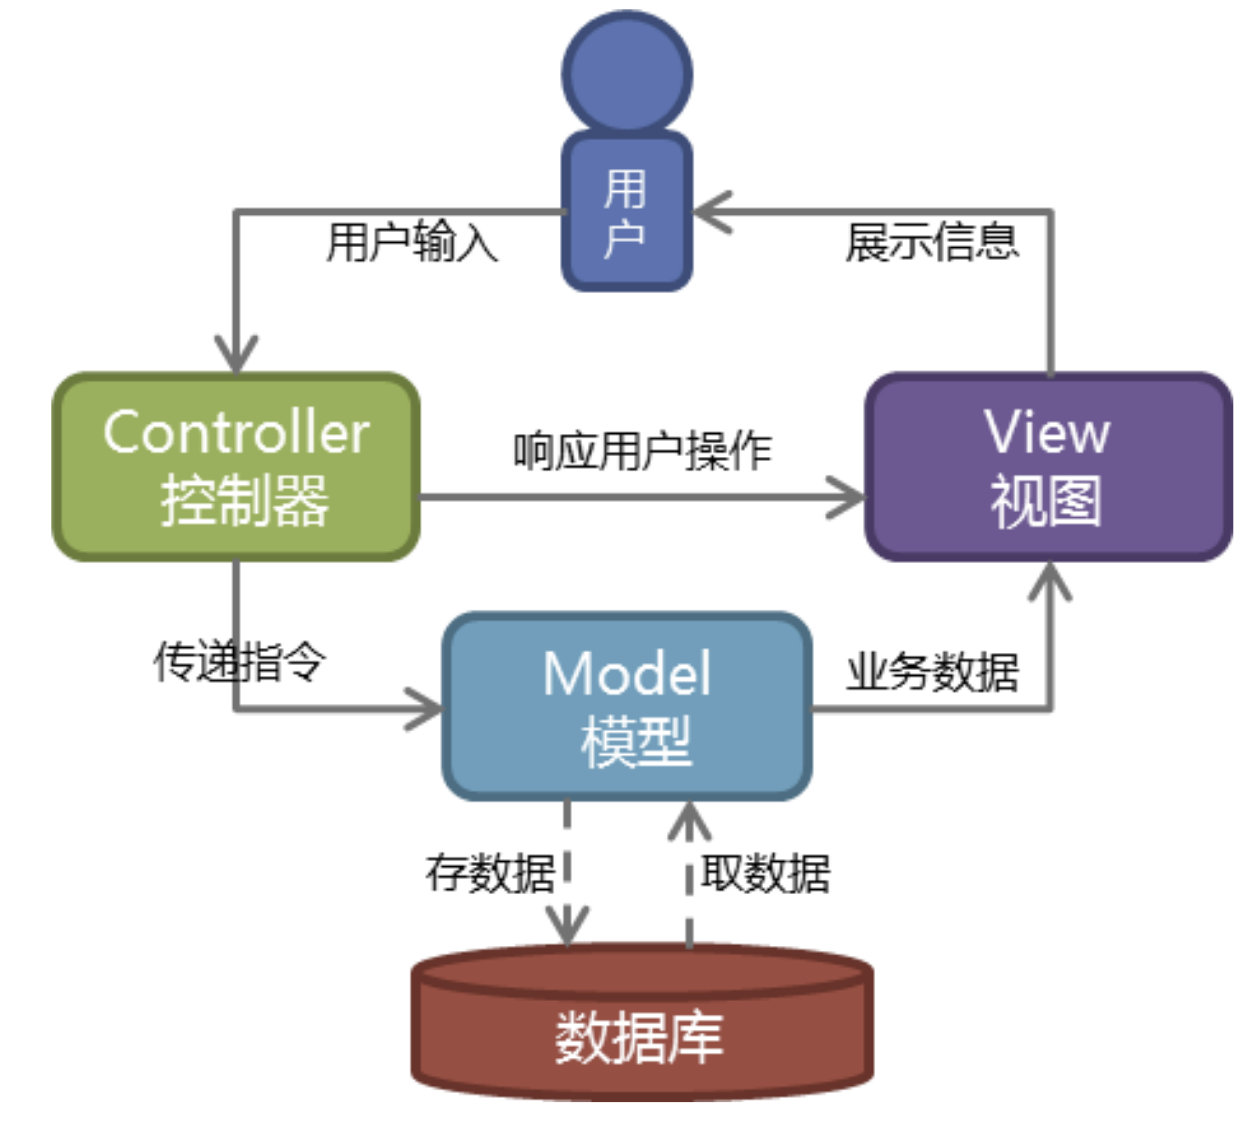 MVC模型